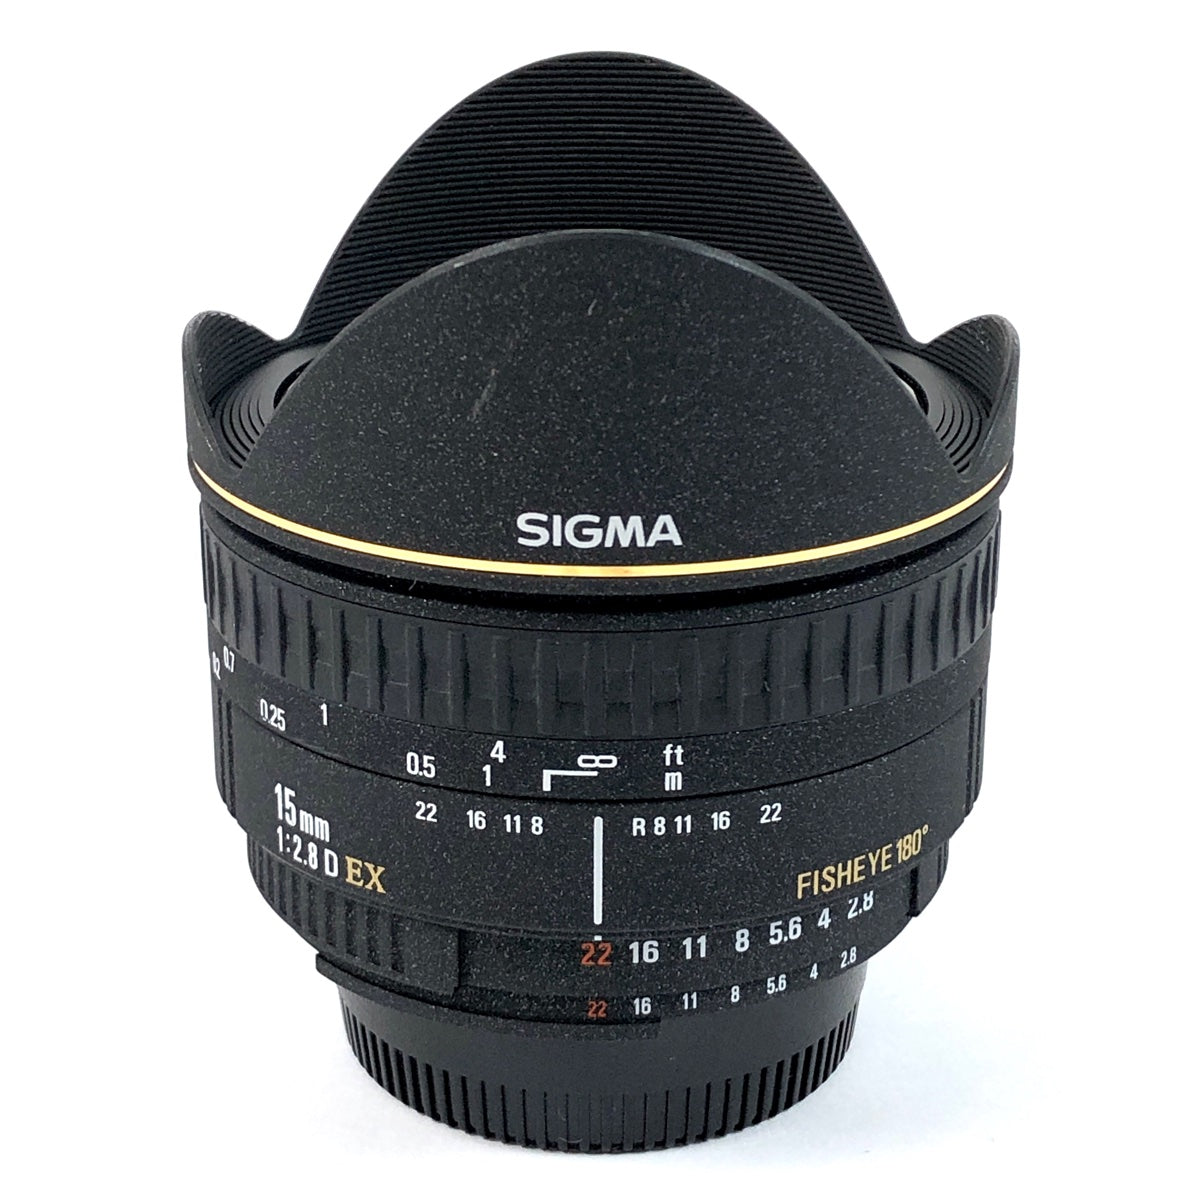 SIGMA 単焦点魚眼レンズ 15mm F2.8 キヤノン用 - レンズ(単焦点)